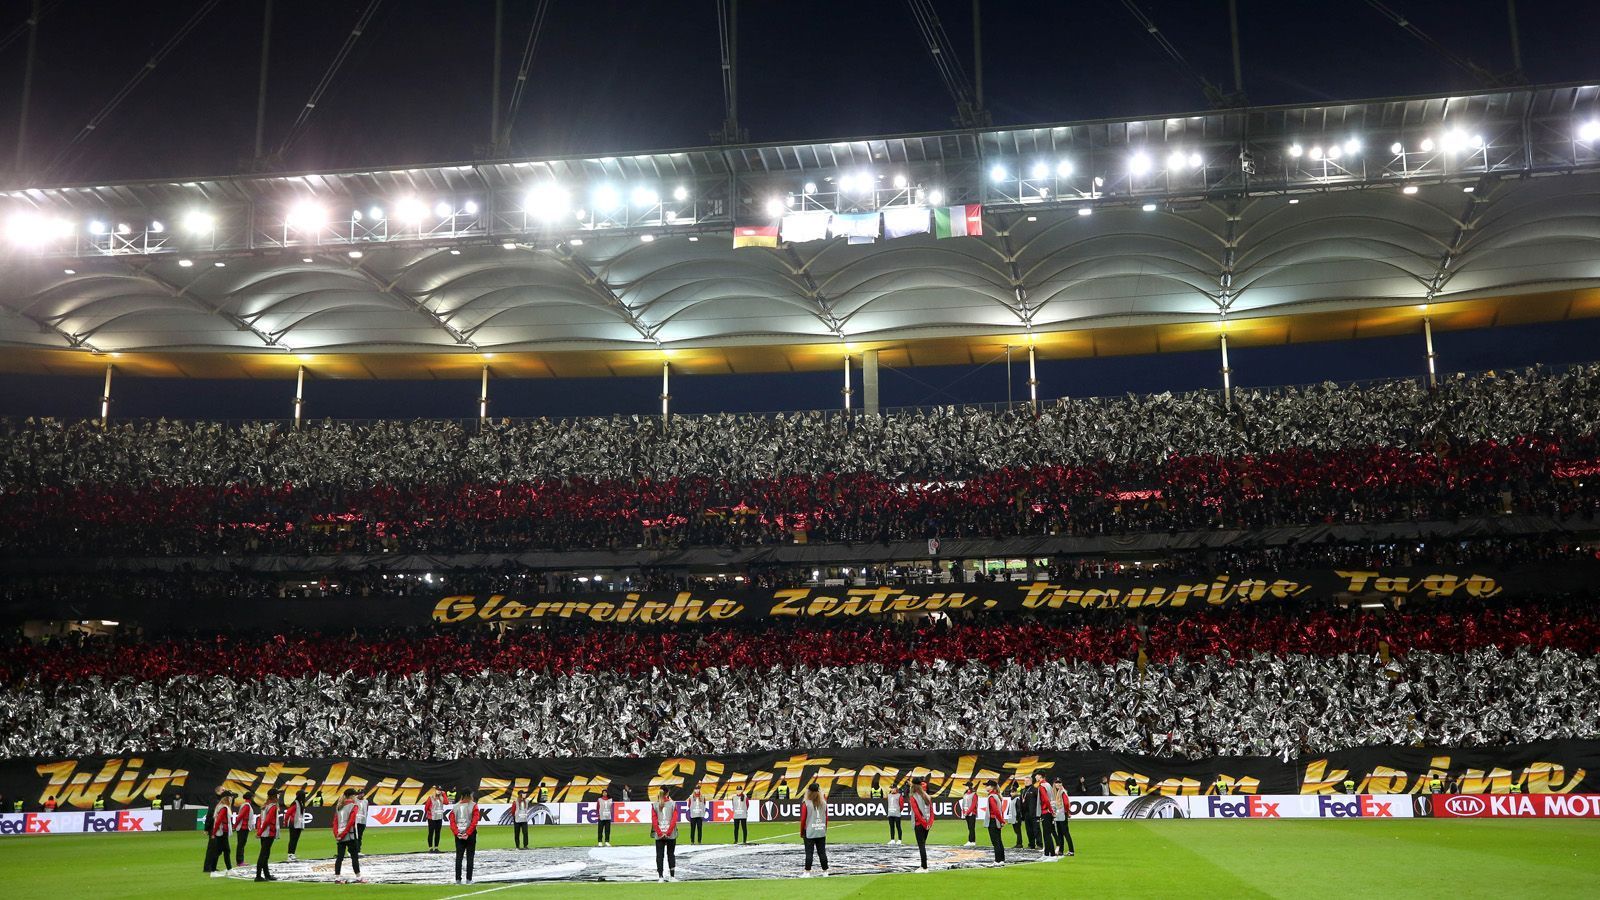 
                <strong>Heimspiel gegen Inter Mailand (7. März 2019)</strong><br>
                Außerdem wurde ein Spruchband hochgehalten, welches demonstrierte, wie die gesamte Stadt zu ihrem Verein hält. "Glorreiche Zeiten, traurige Tage. Wir stehen zur Eintracht, gar keine Frage." Gänsehaut pur!
              